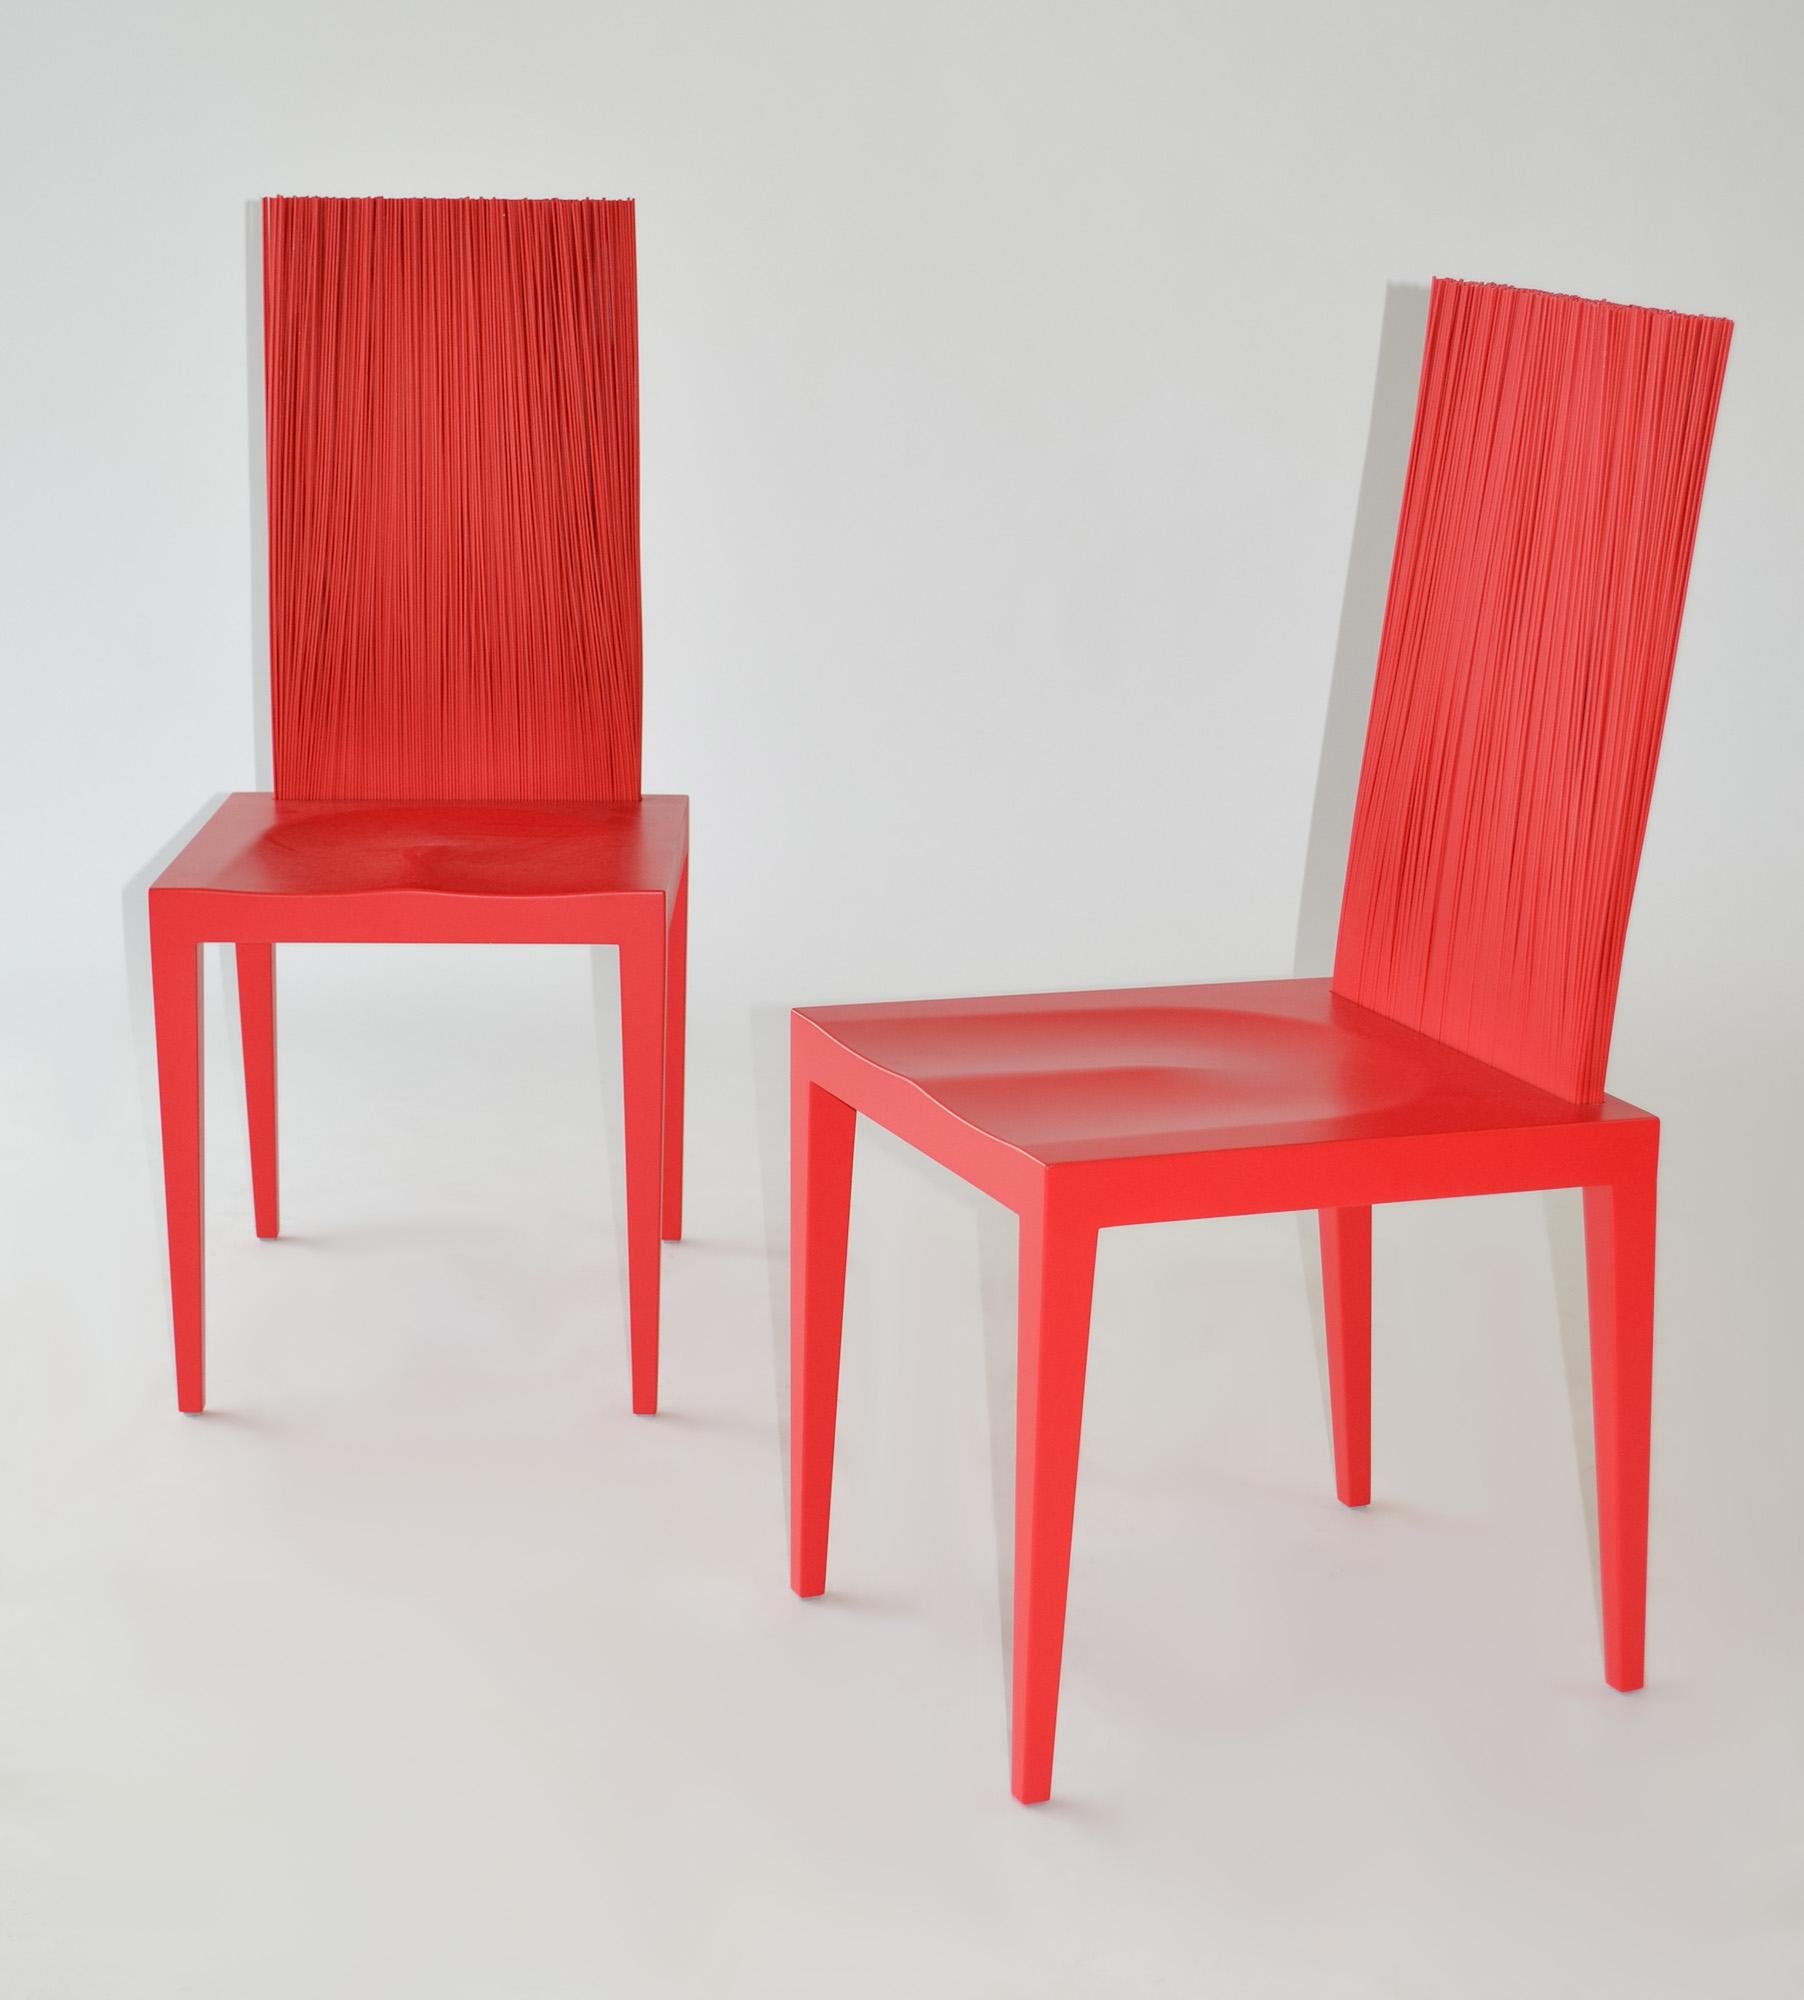  Ein Paar Stühle der Campana Brothers für Edra, 'Jenette'. 
Ein Paar rote Jenette-Stühle von Fernando und Humberto Campana für Edra, Italien, 21.

Struktur aus Metall, getaucht und gegossen in hartem Polyurethan, beschichtet mit rotem